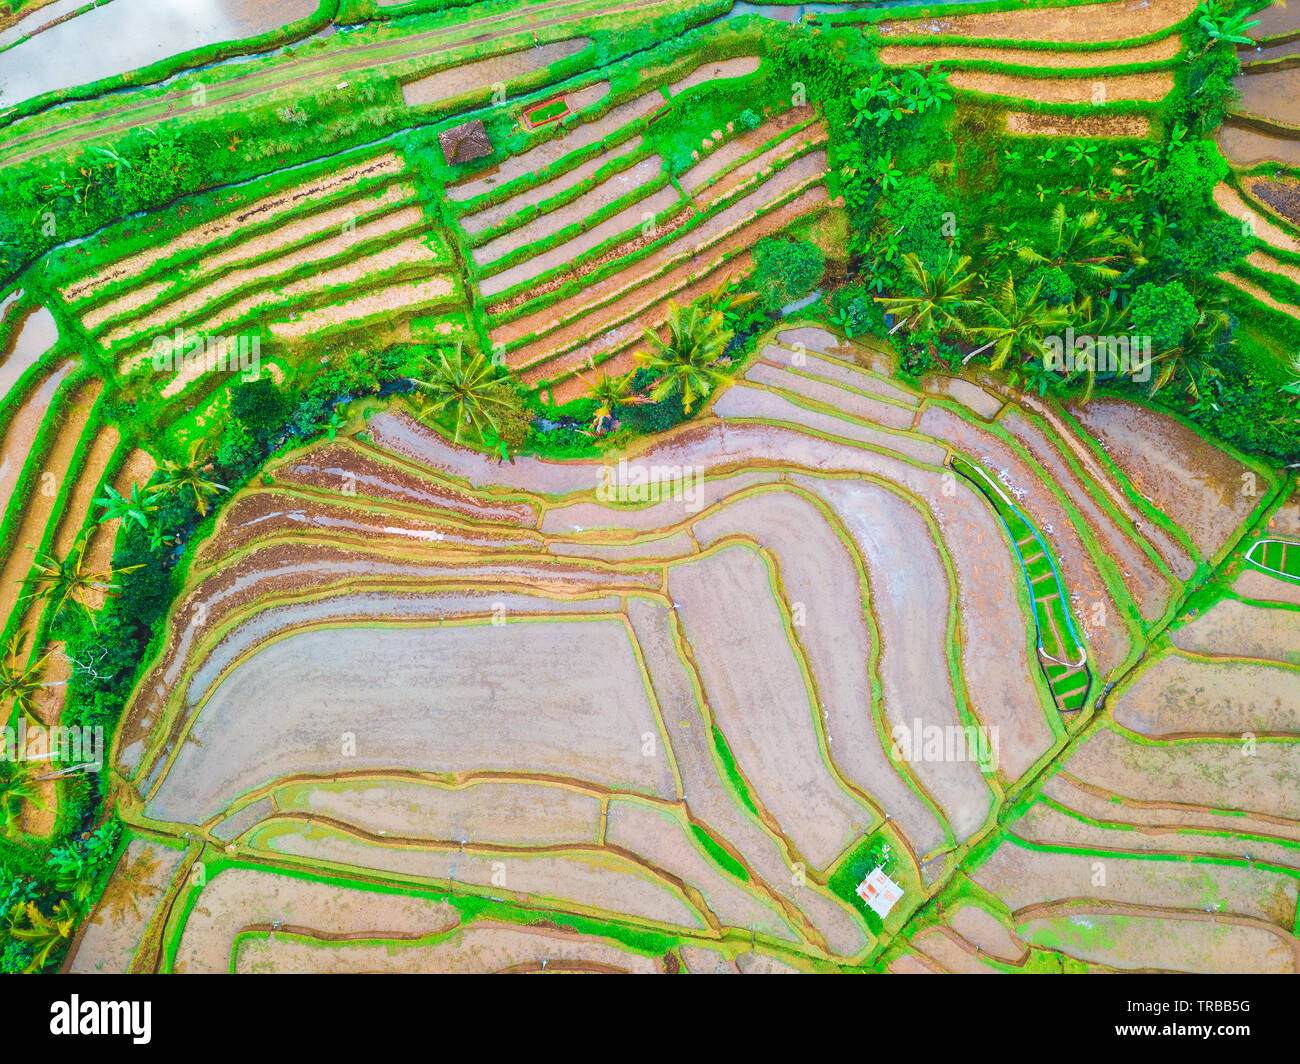 Vue aérienne de rizières en terrasses de Jatiluwih, Bali, Indonésie Banque D'Images